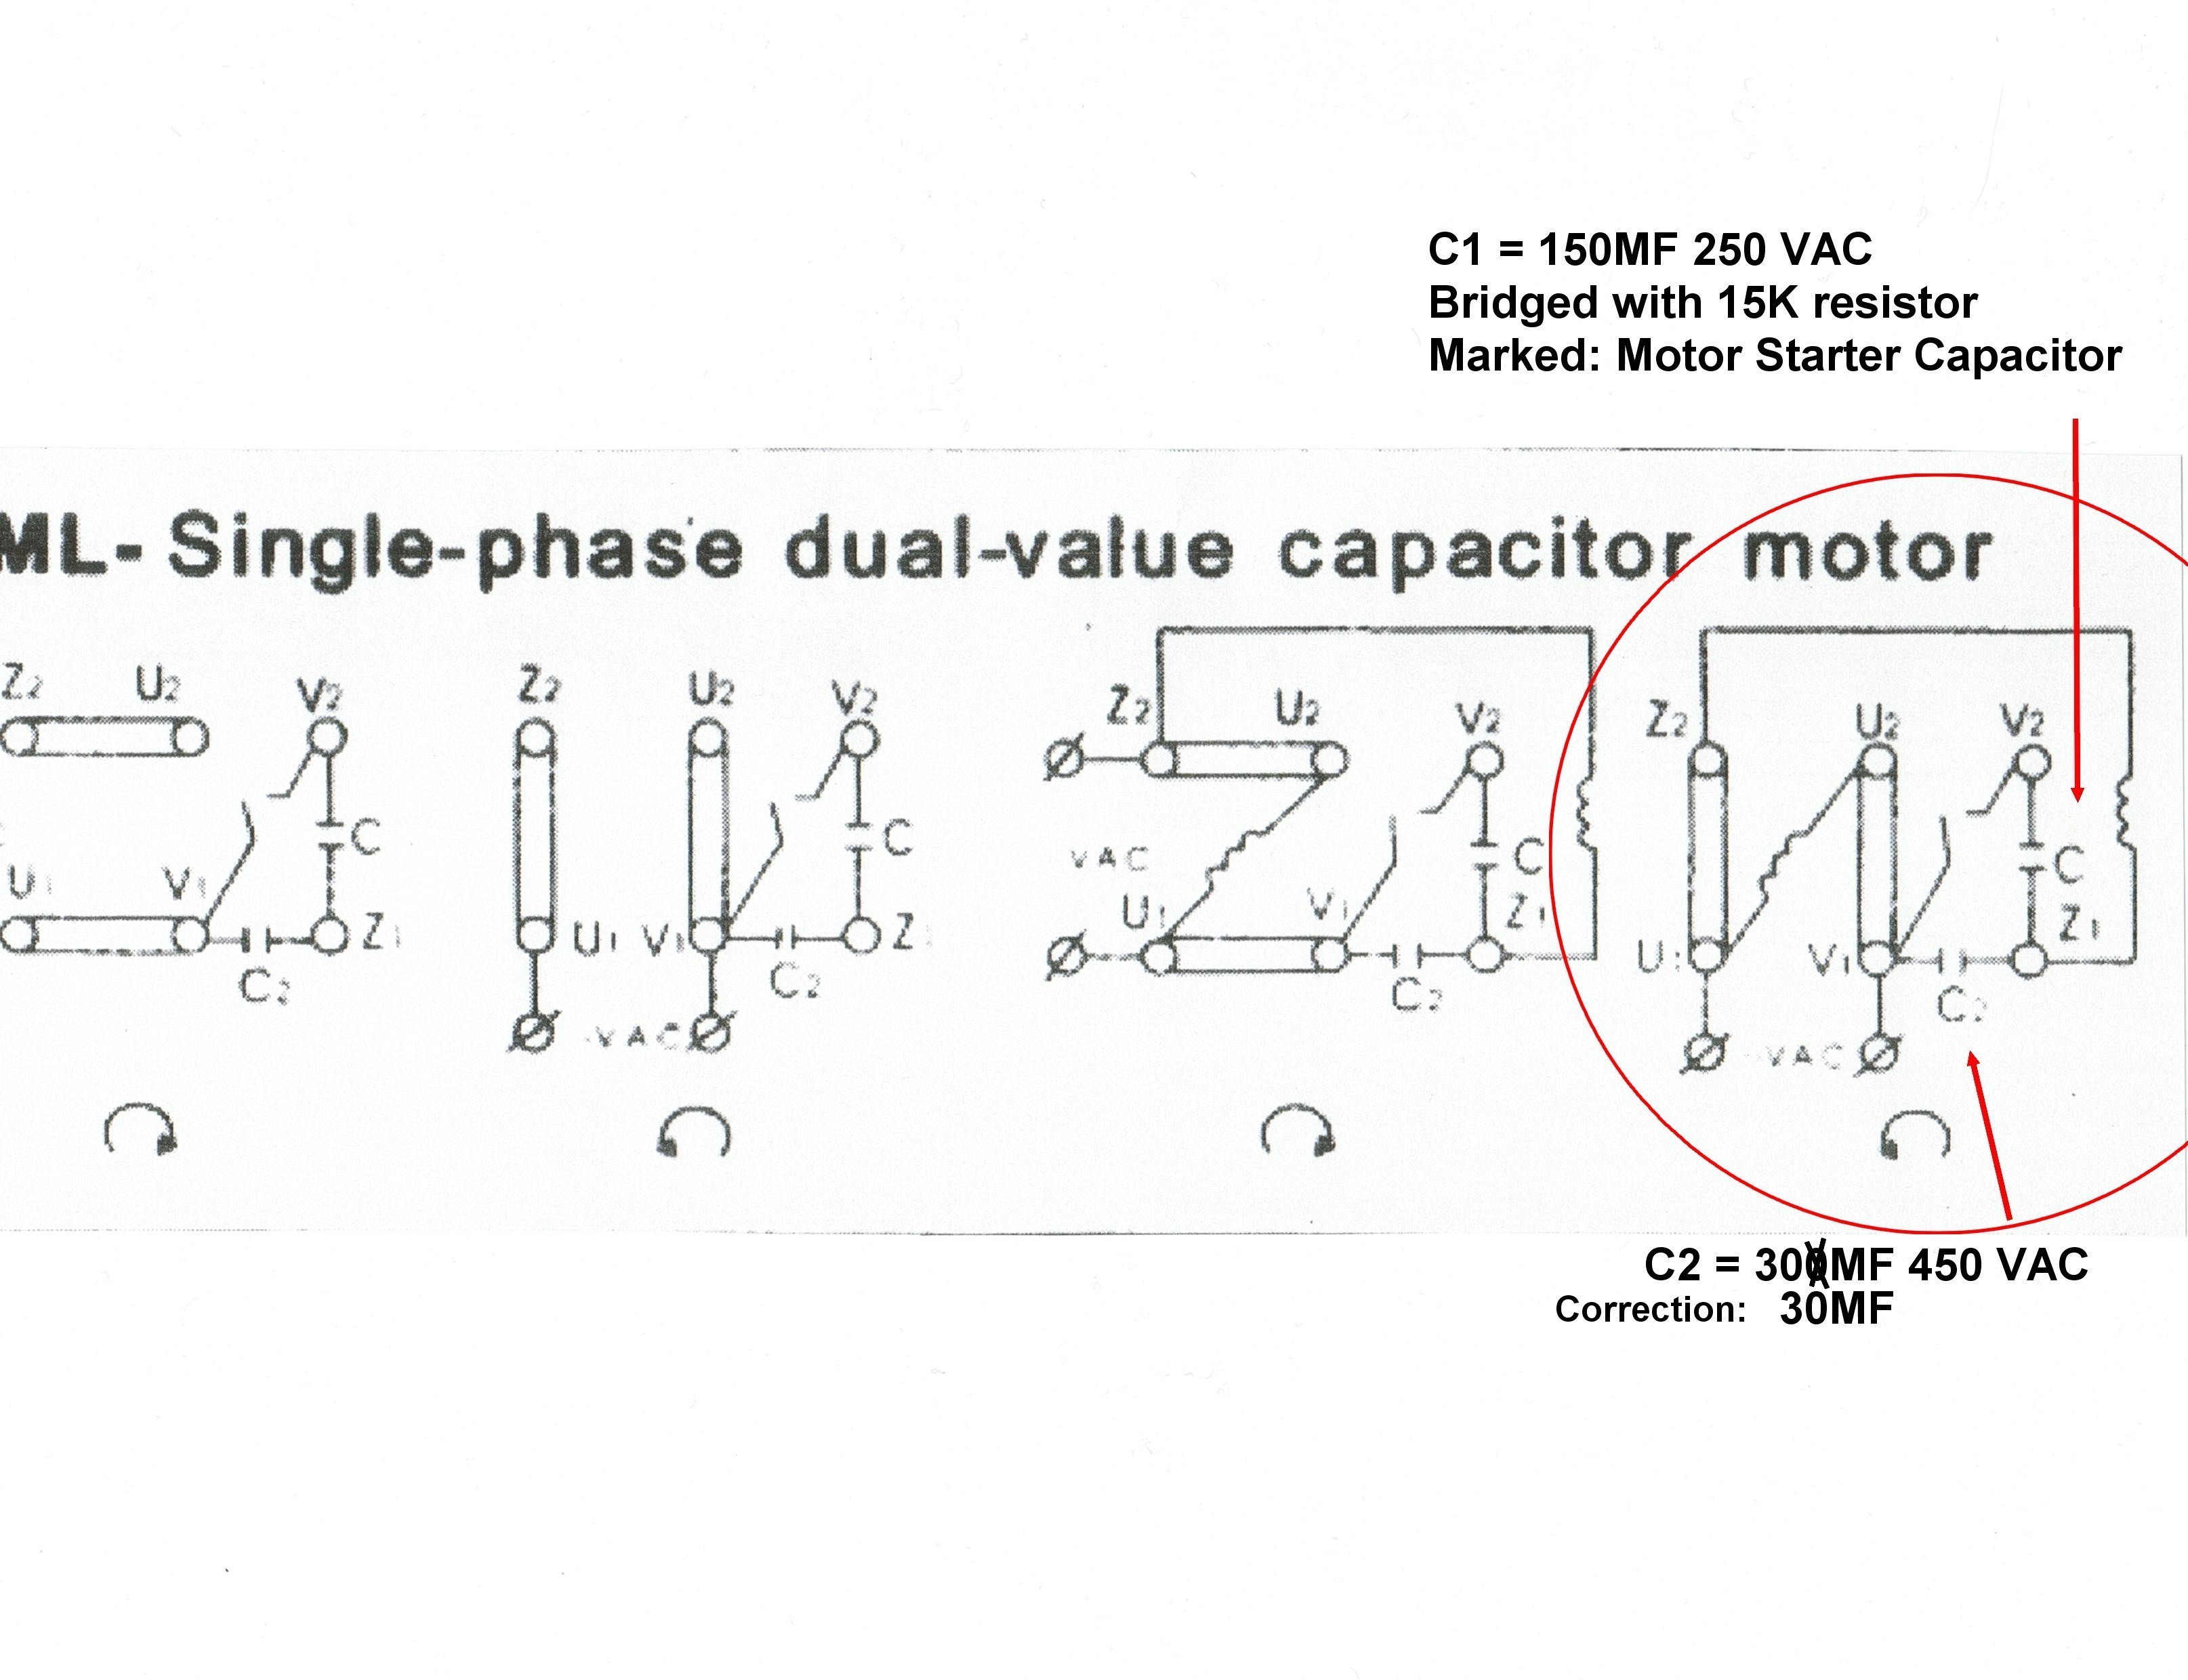 5 Hp Electric Motor Single Phase Wiring Diagram Sample Pdf Wiring Baldor Connection Diagram Baldor Electric Motor Wiring Diagrams Model 274